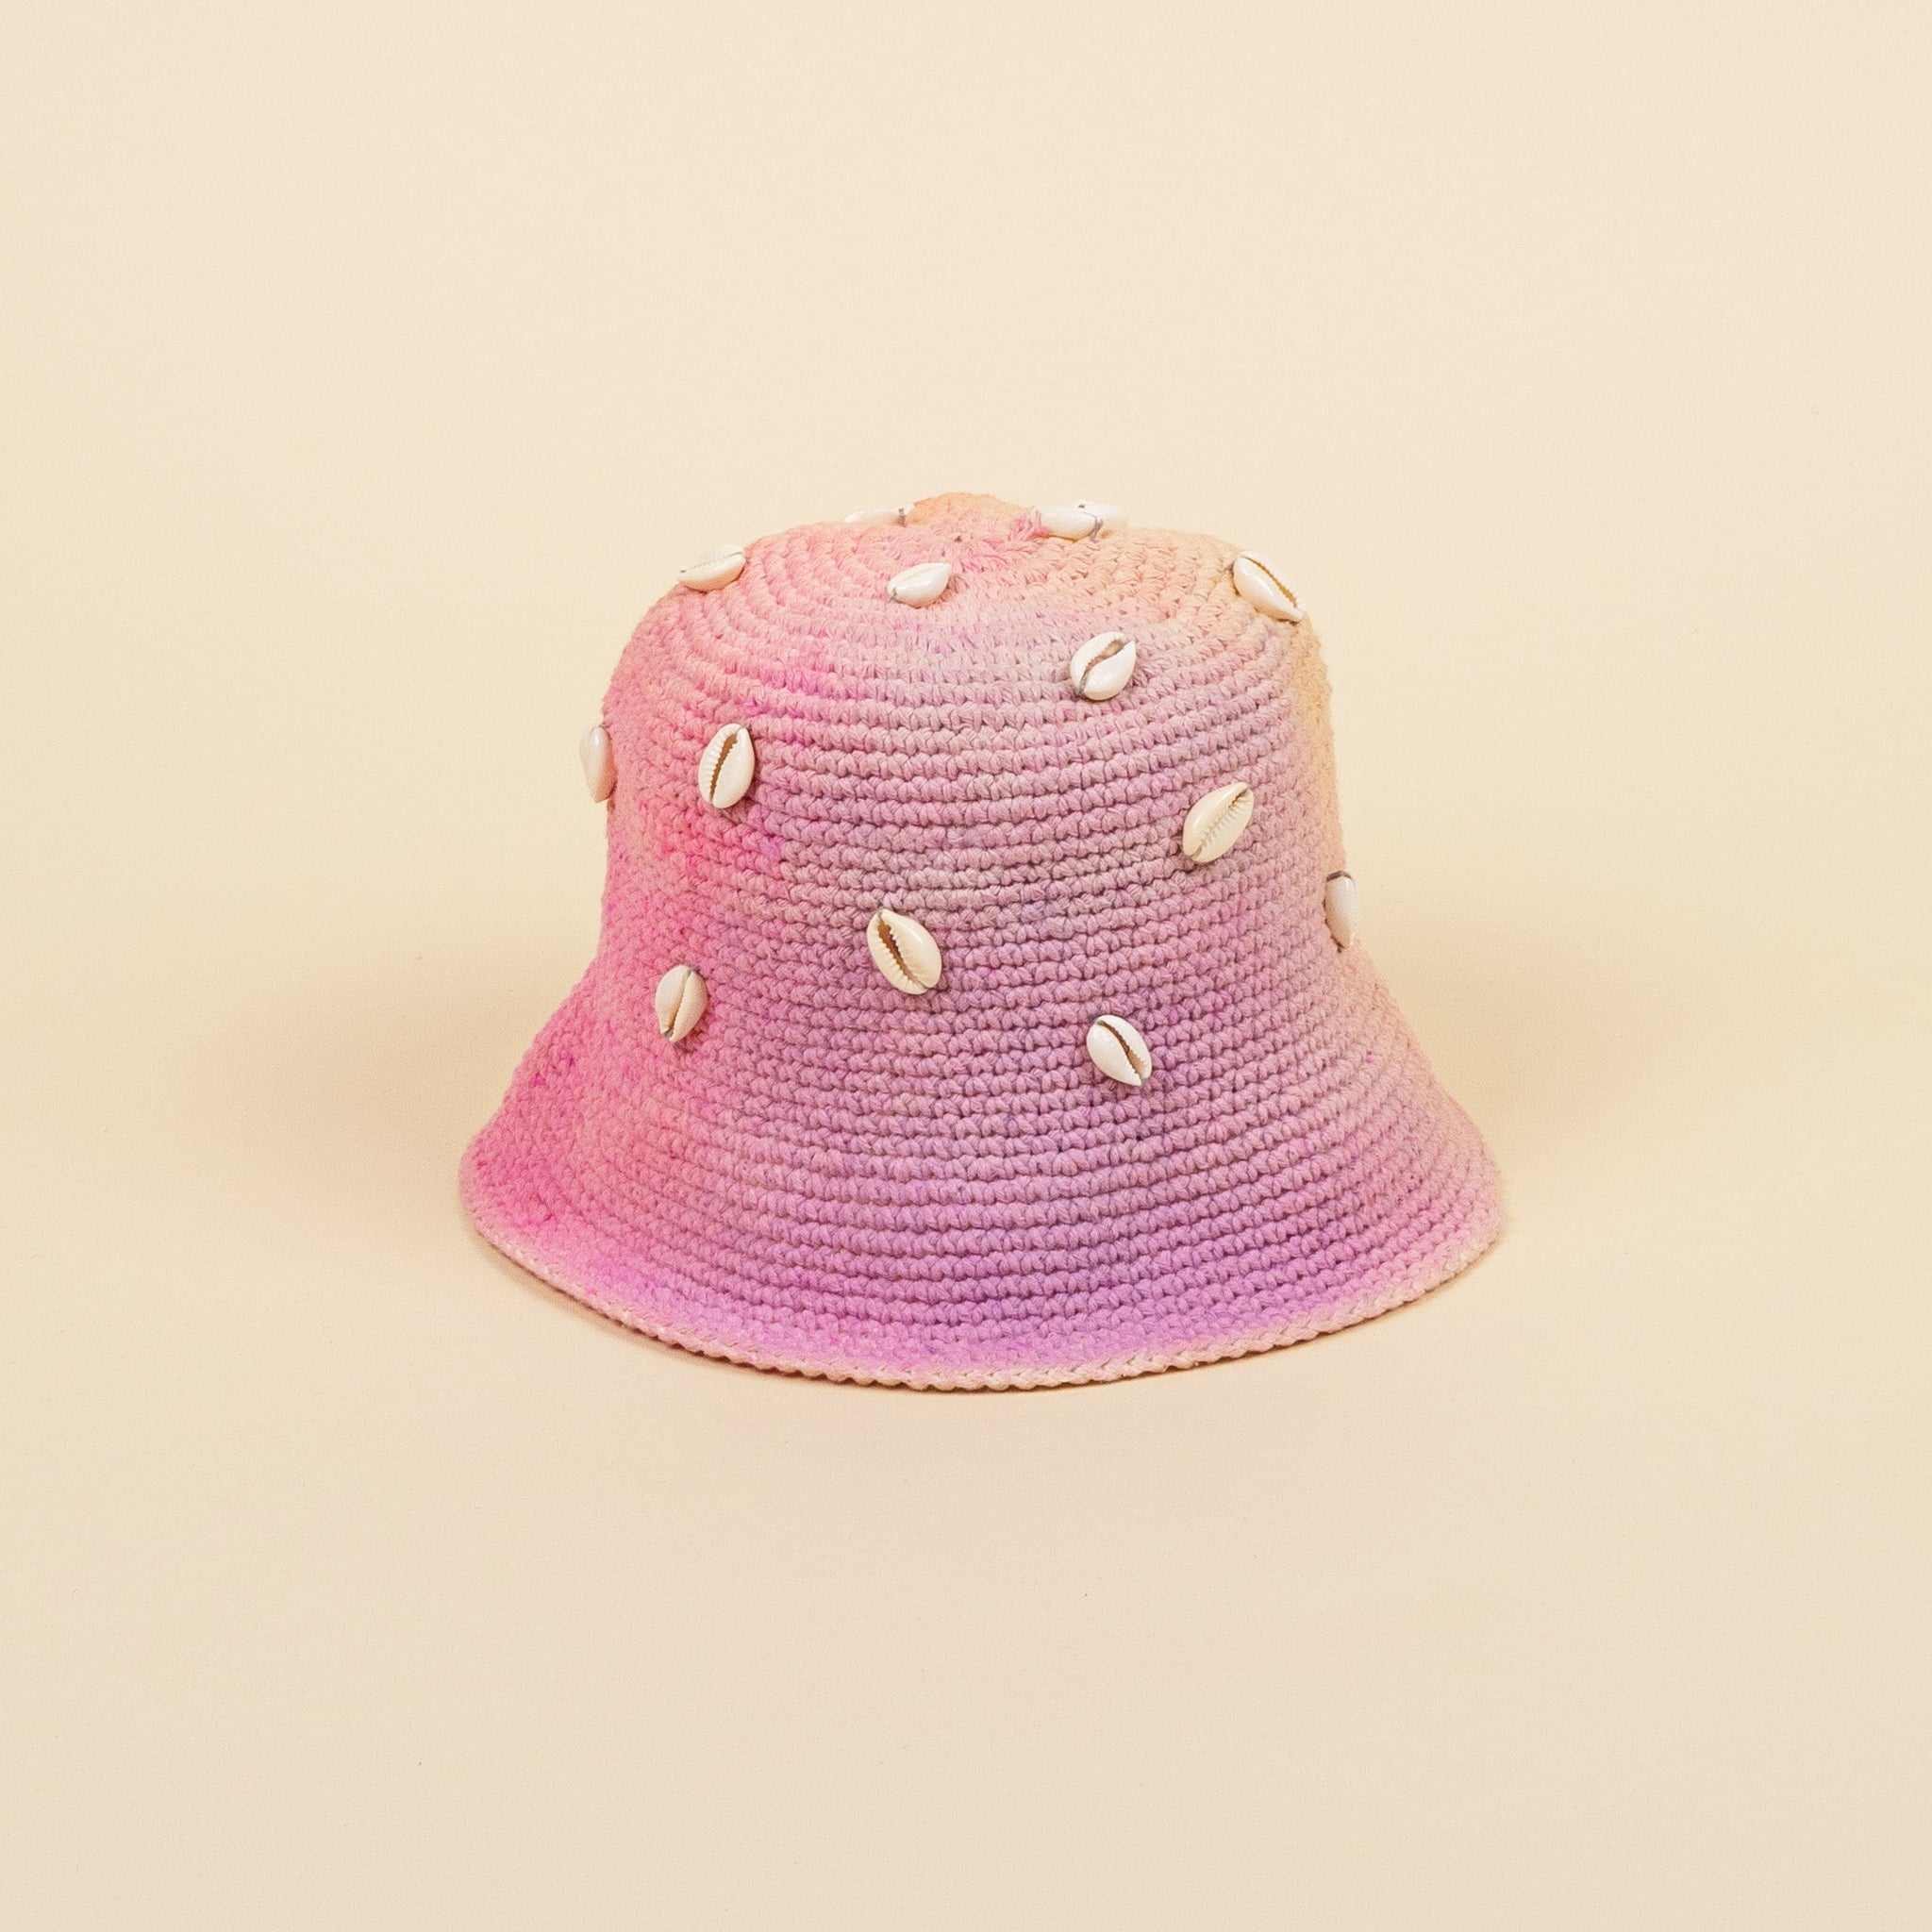 Image du bucket hat Kanil de Maison Badigo, bucket hat (bob) en cotton crocheté multicolore doublée unique et tendance